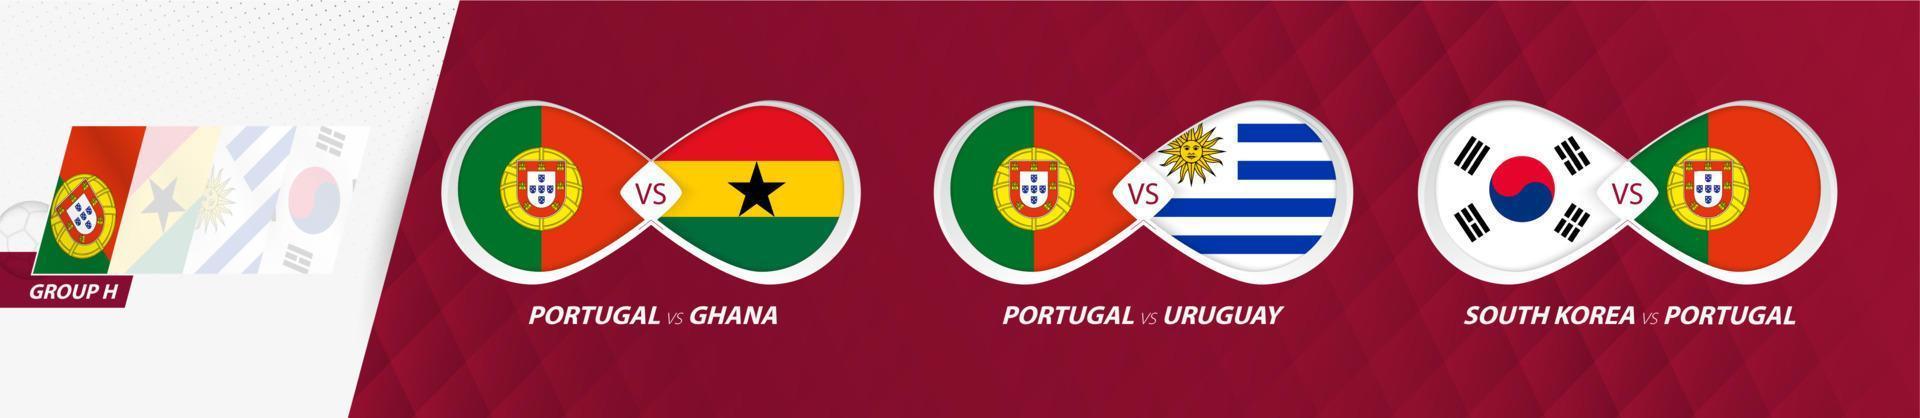 portugiesische nationalmannschaftsspiele in gruppe h, fußballwettbewerb 2022, alle spiele symbol in der gruppenphase. vektor